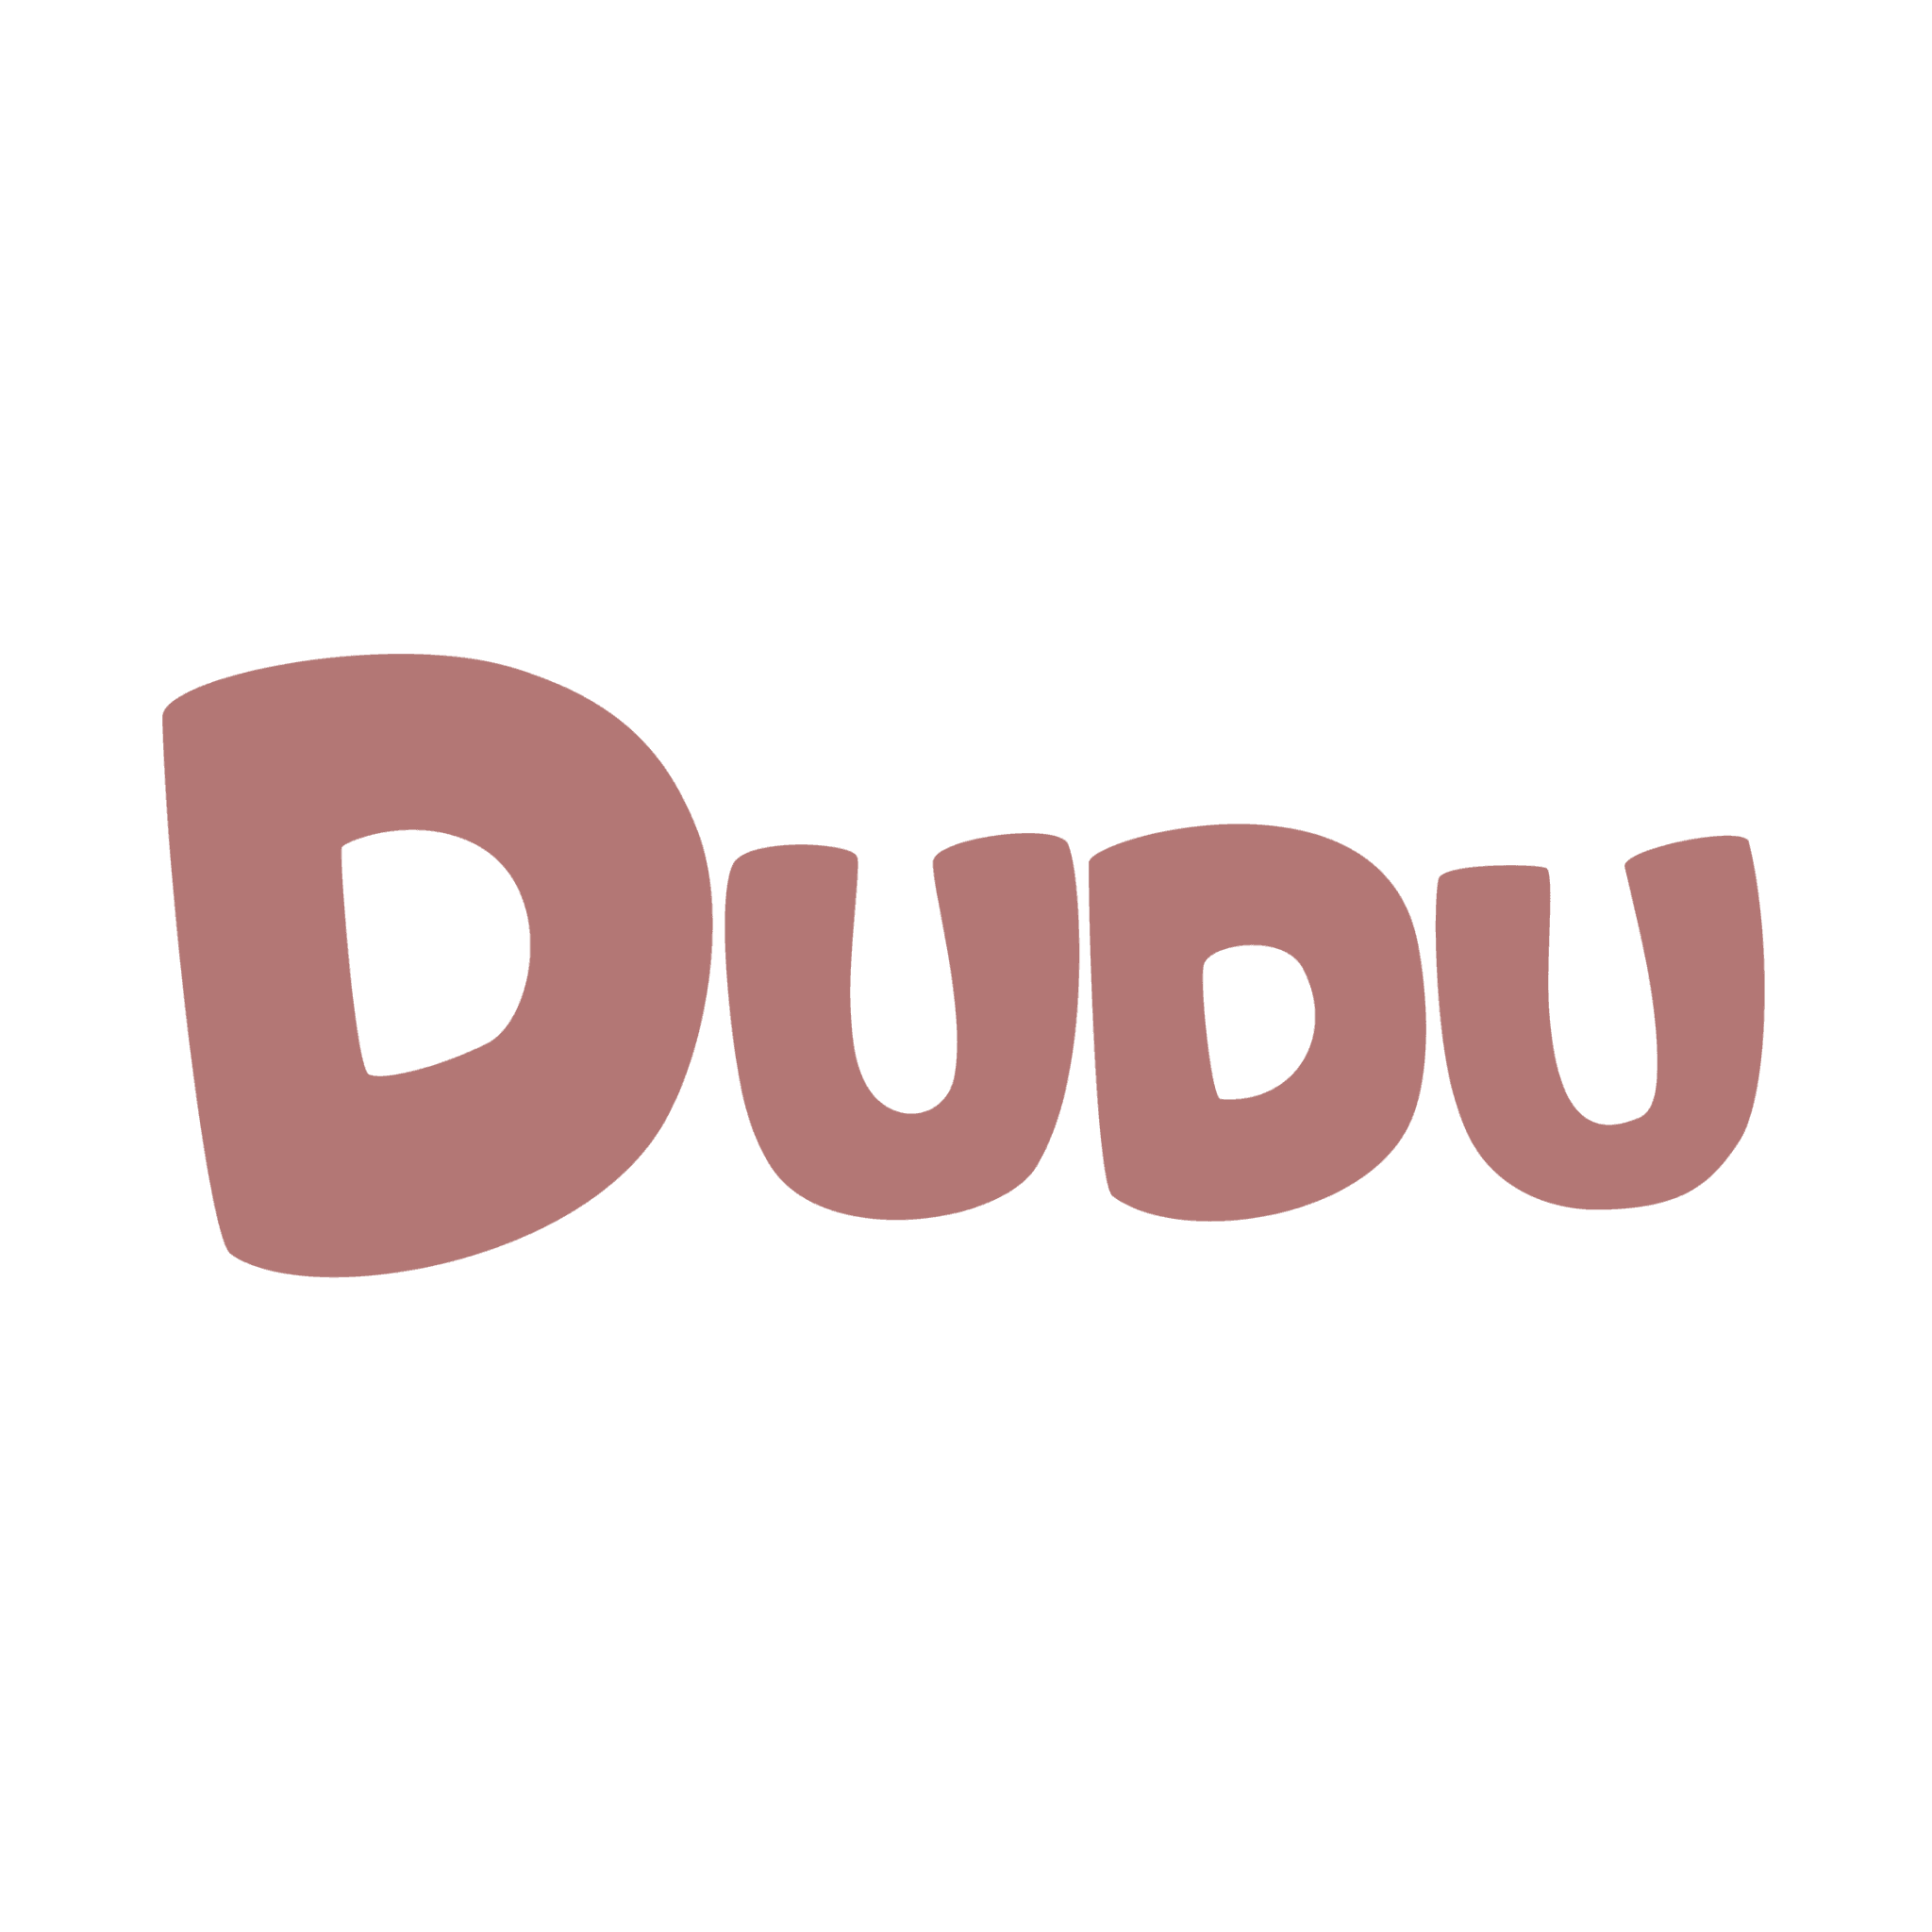 dudulab_eth